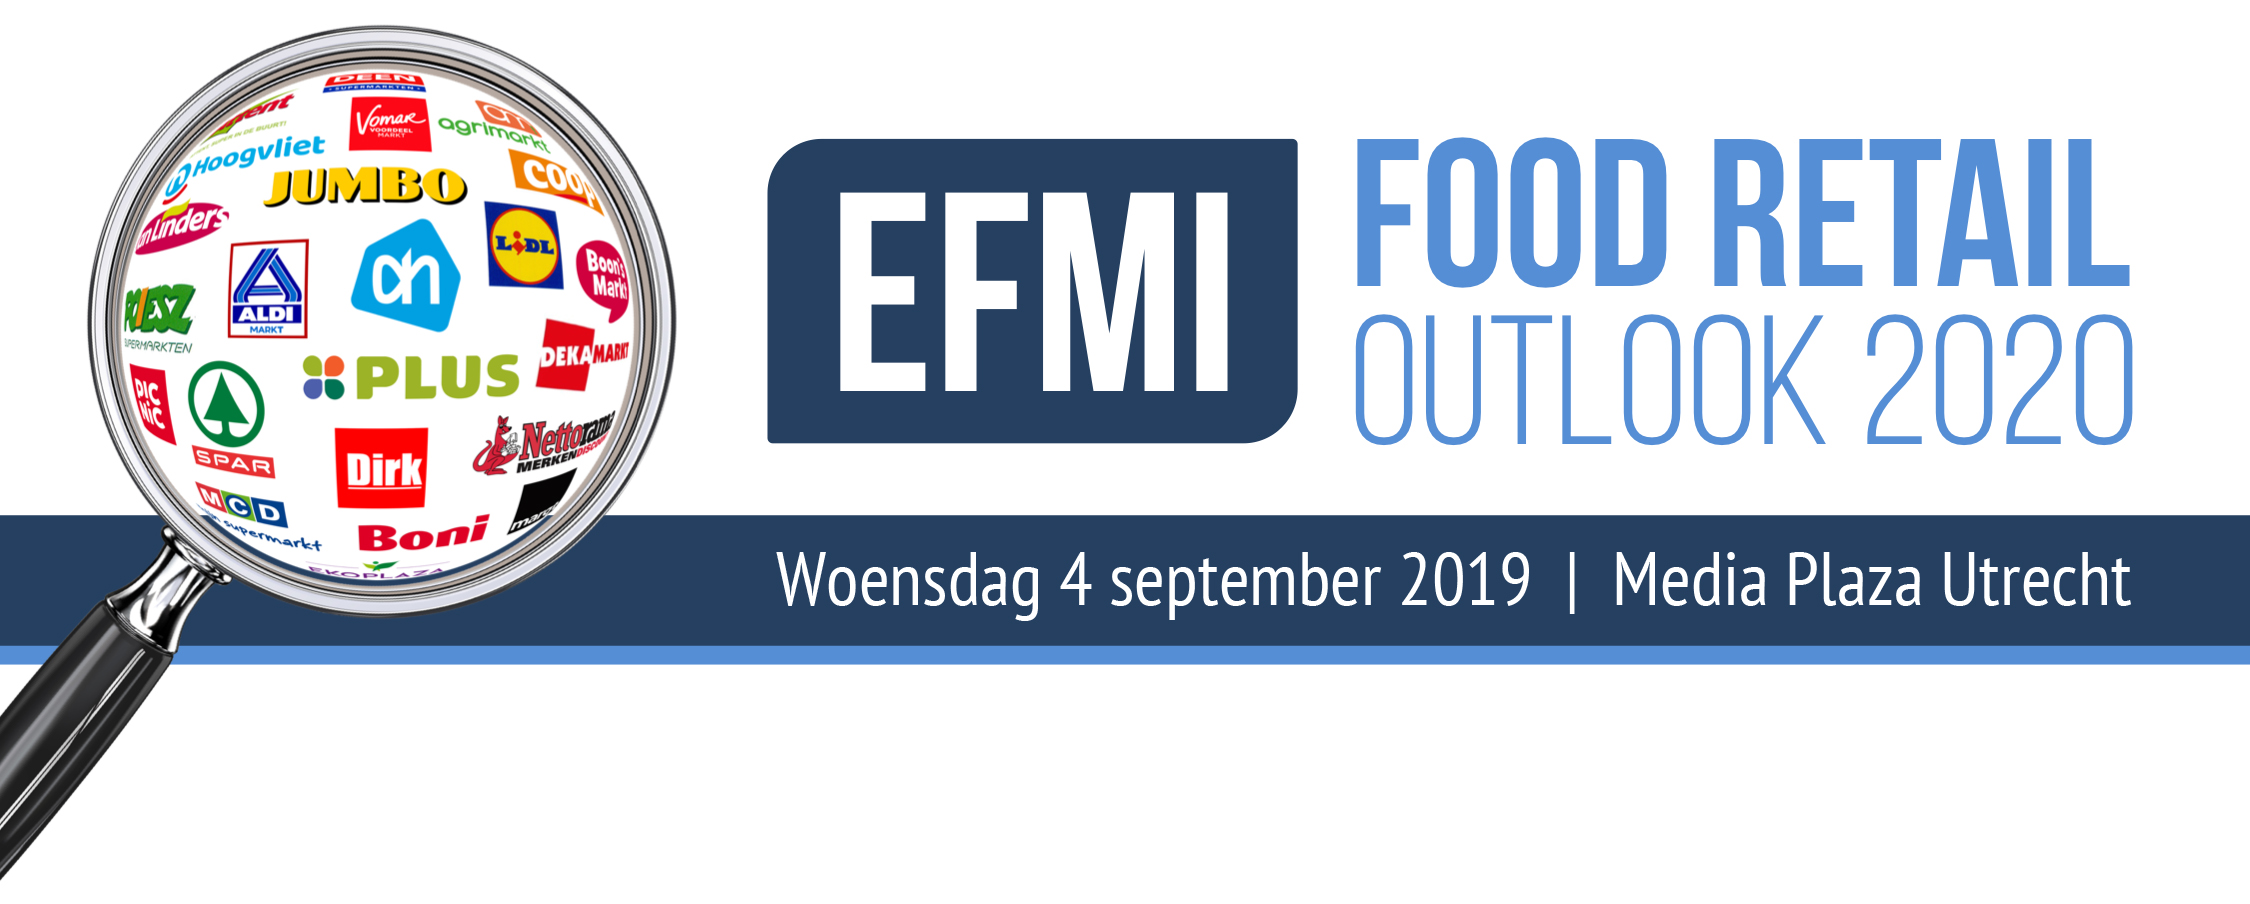 EFMI Food Retail Outlook 2020